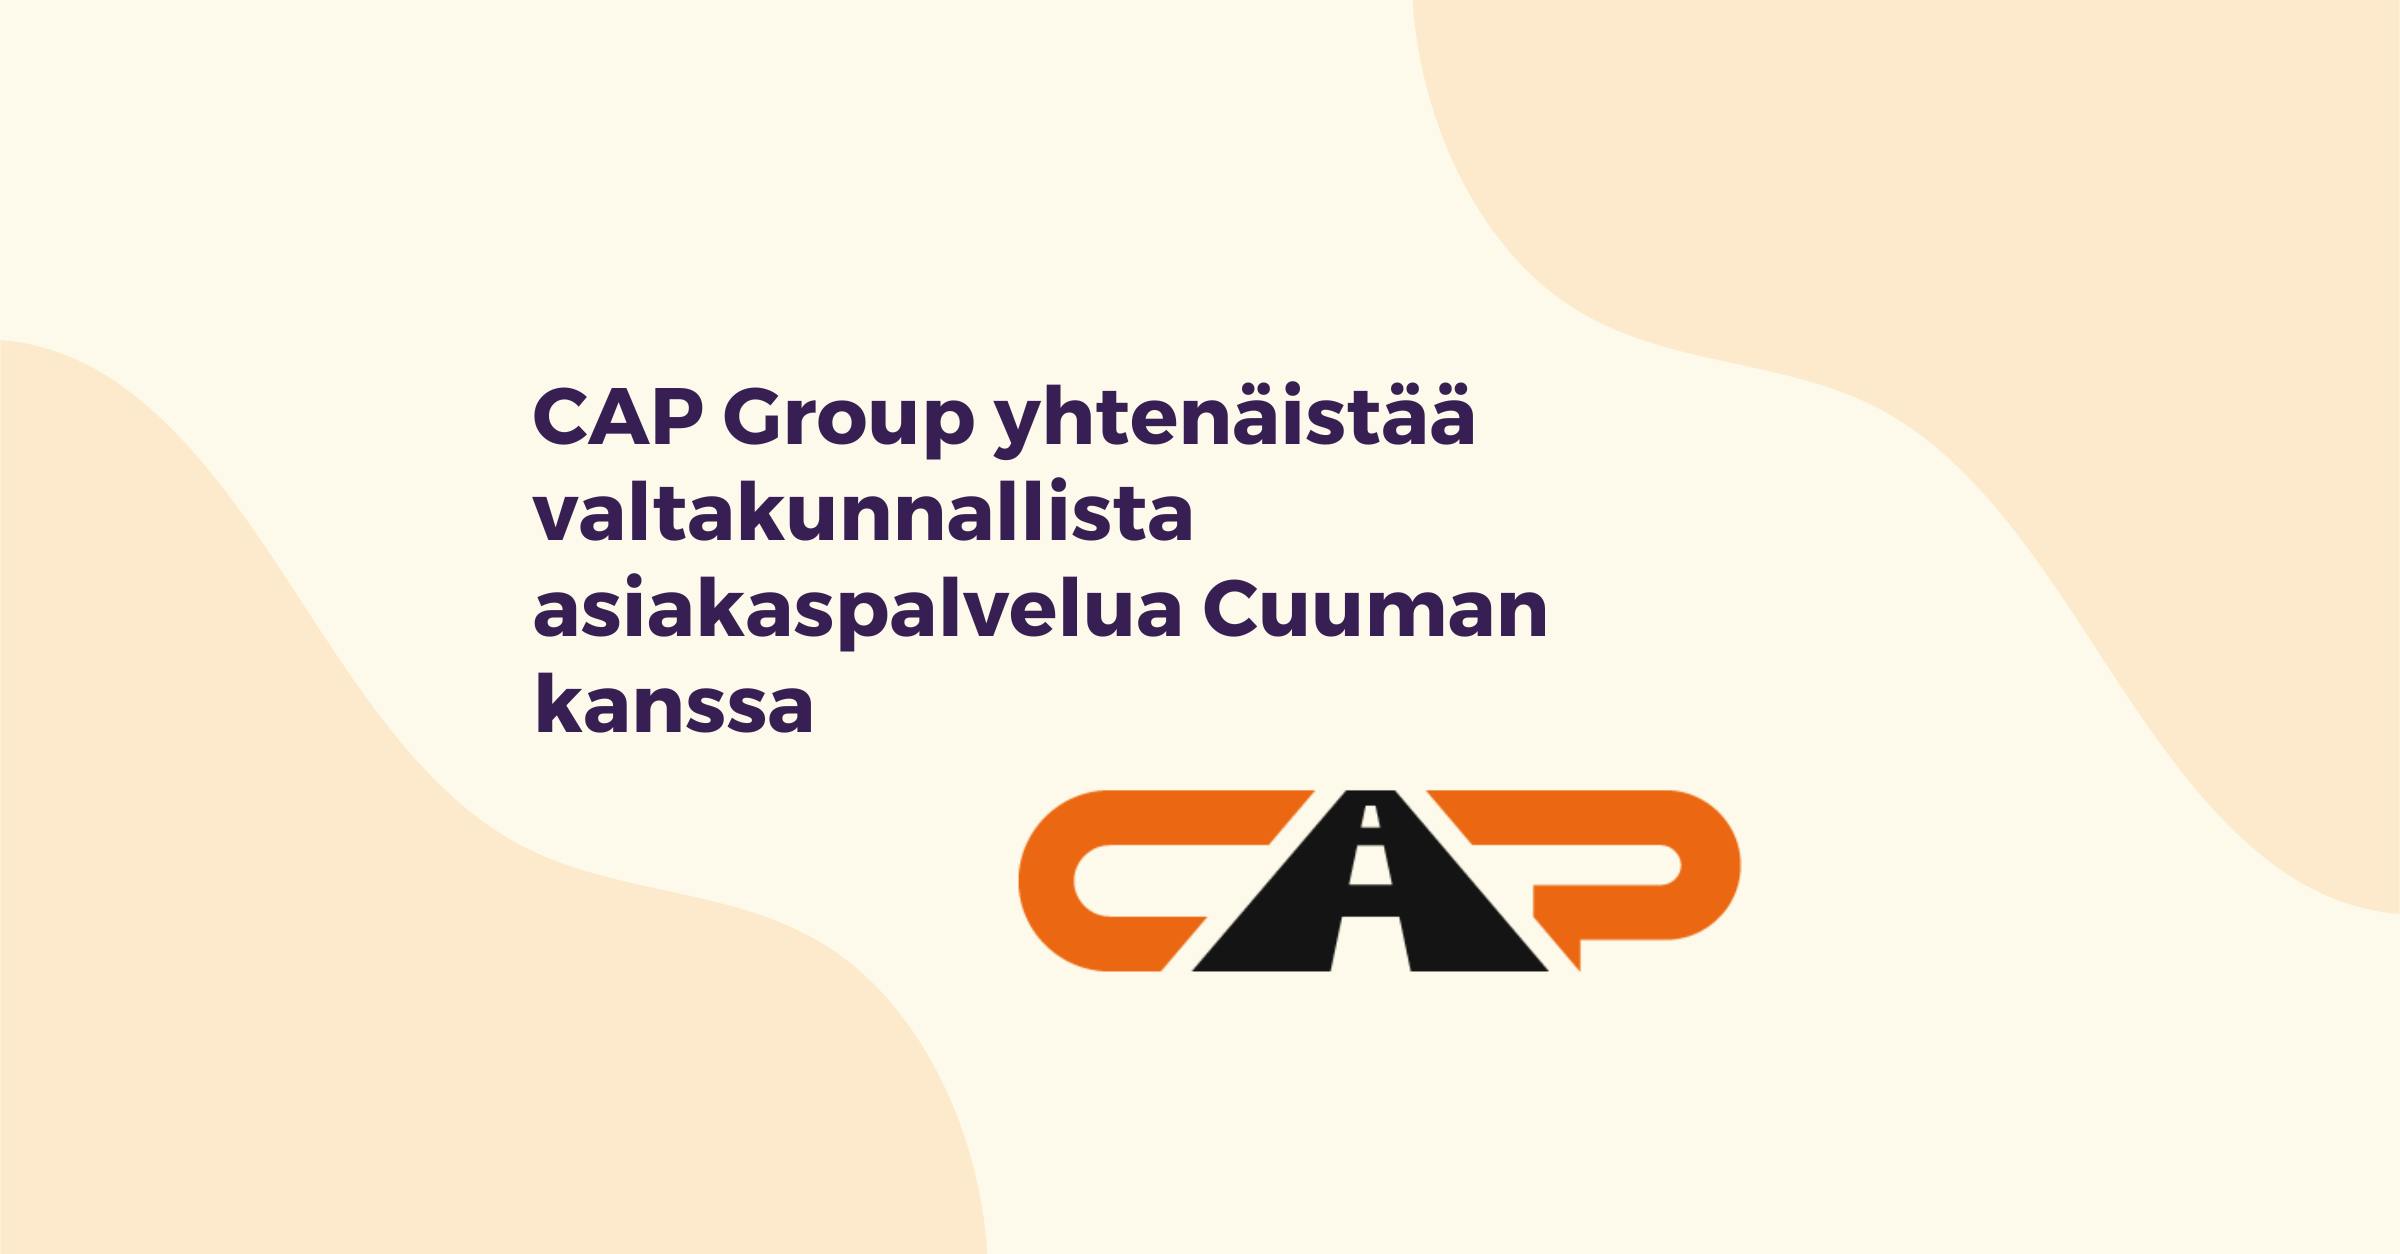 CAP Group yhtenäistää valtakunnallista asiakaspalvelua Cuuman kanssa